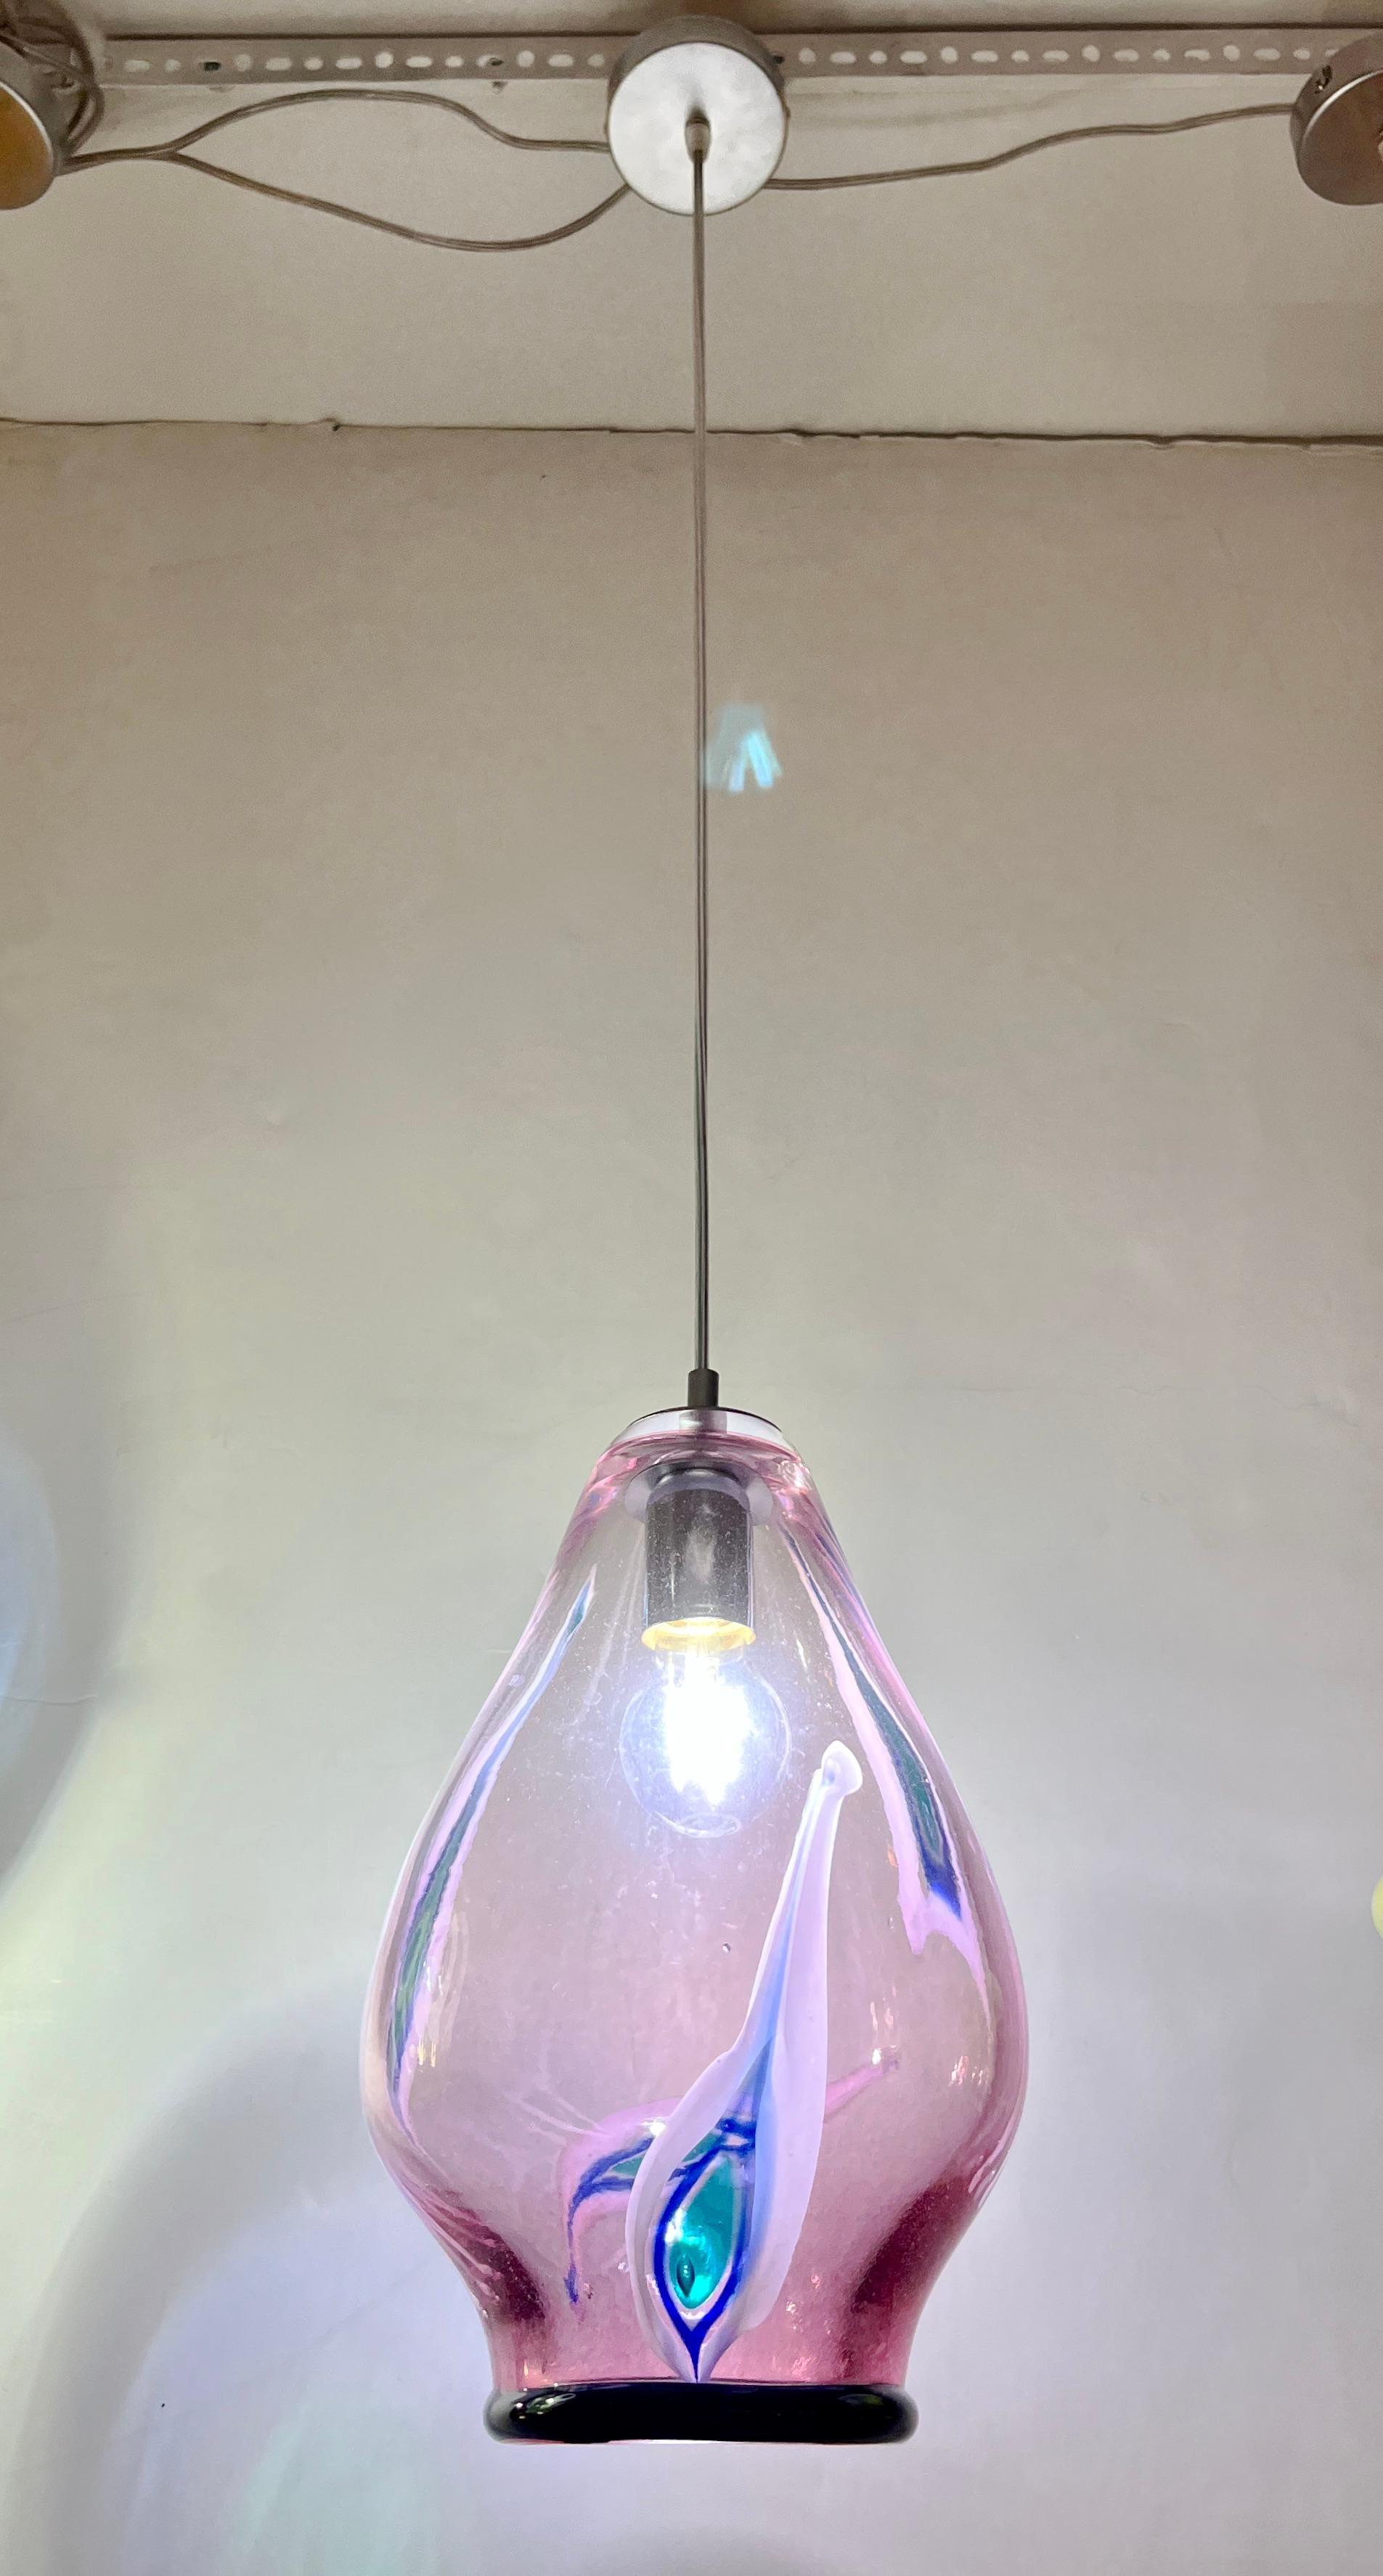 Amusant et élégant lustre suspendu italien contemporain fait sur mesure, de conception moderne organique, entièrement réalisé à la main avec une hauteur réglable, composé d'un abat-jour incurvé sexy en verre soufflé de Murano translucide violet